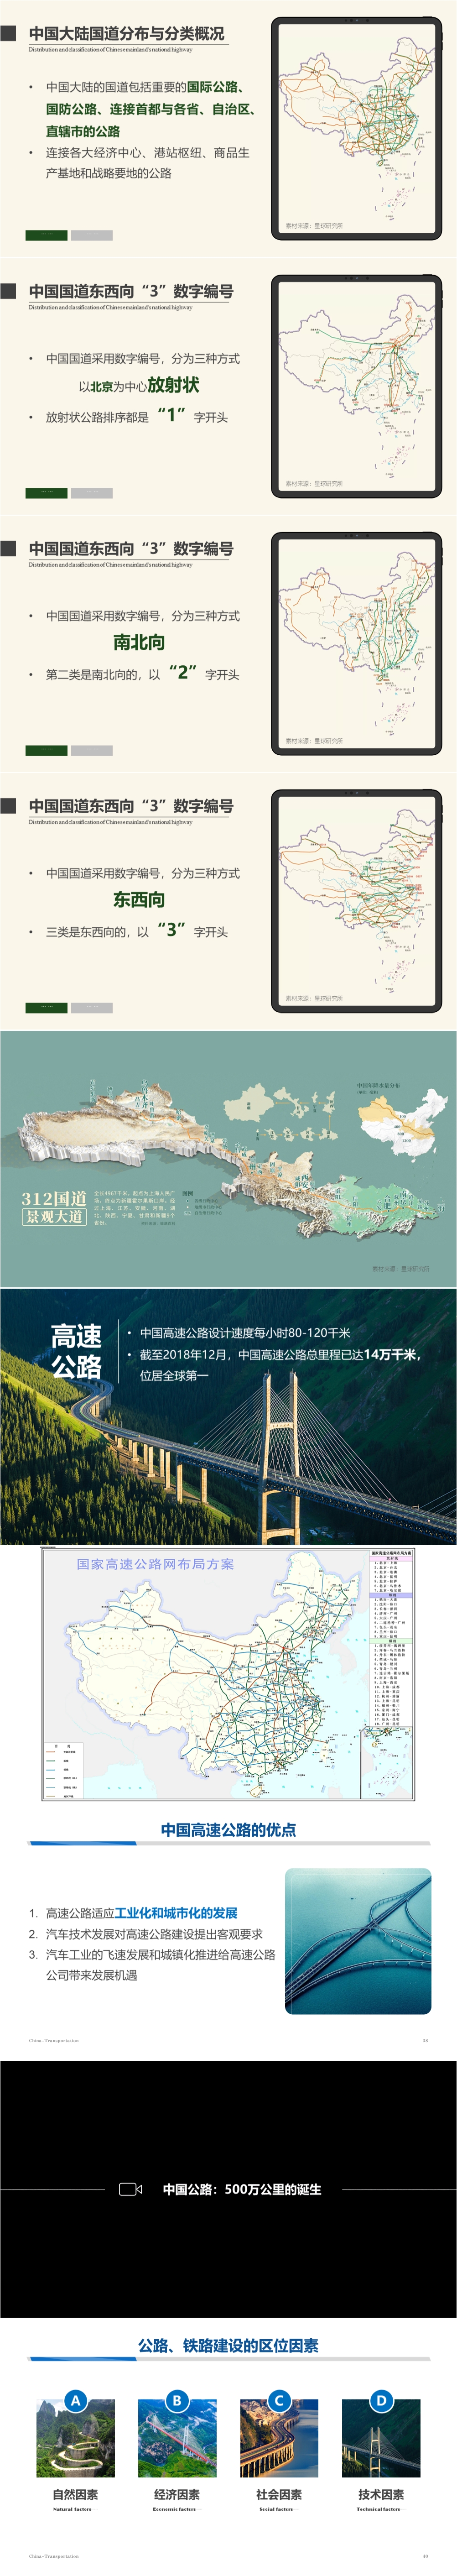 第09讲 中国的交通运输业 [2021版]-1000px-03.jpg